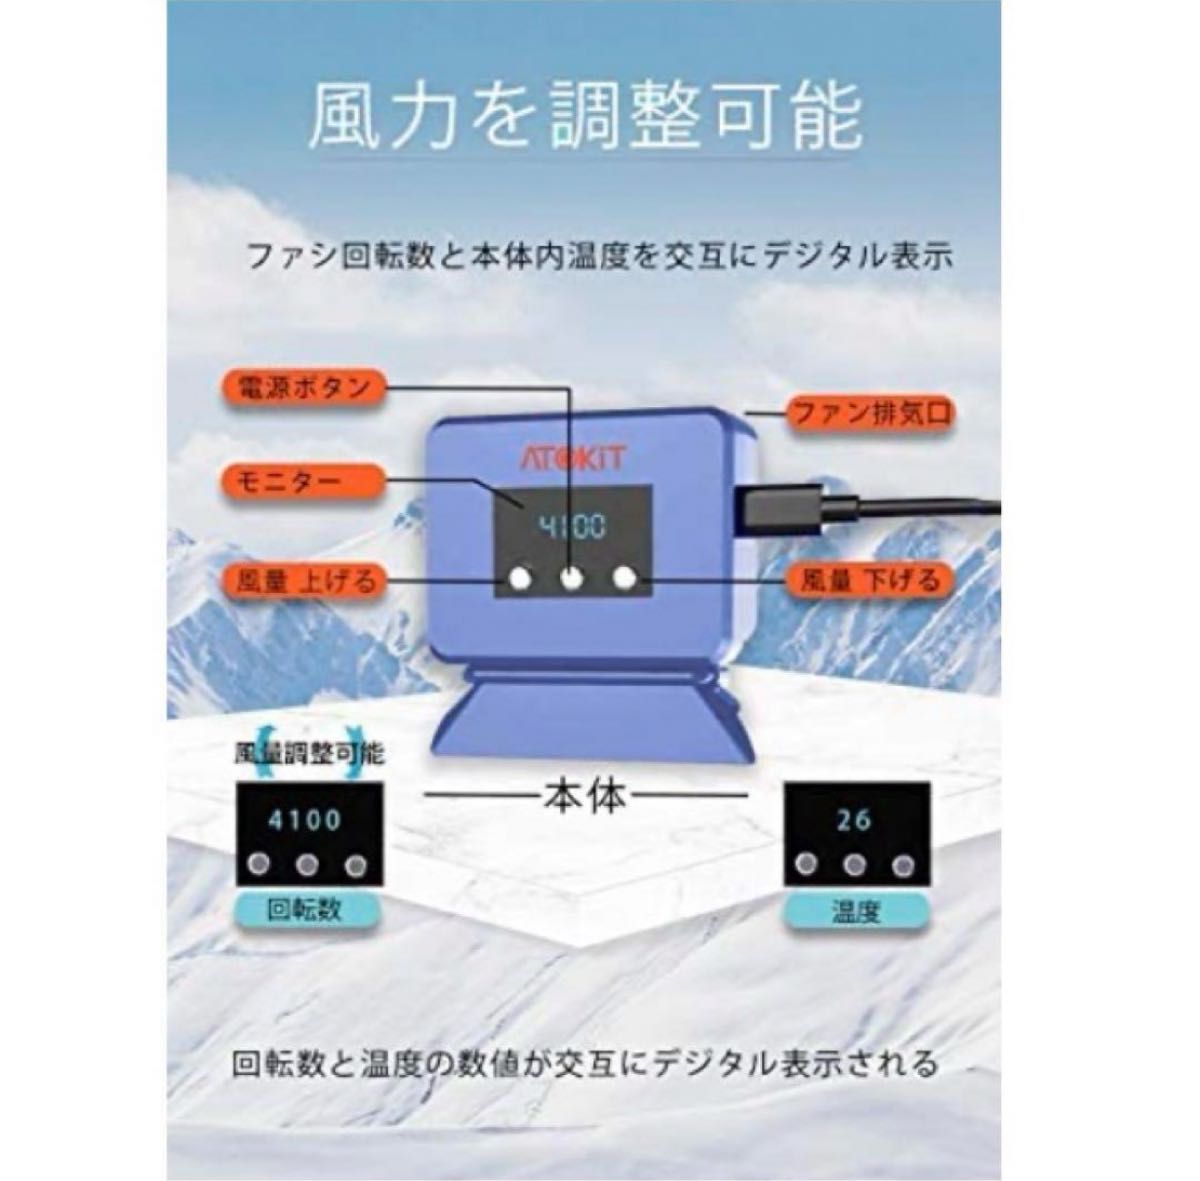 【2021改良版】Switch 冷却ファン Nintendo スイッチ 専用